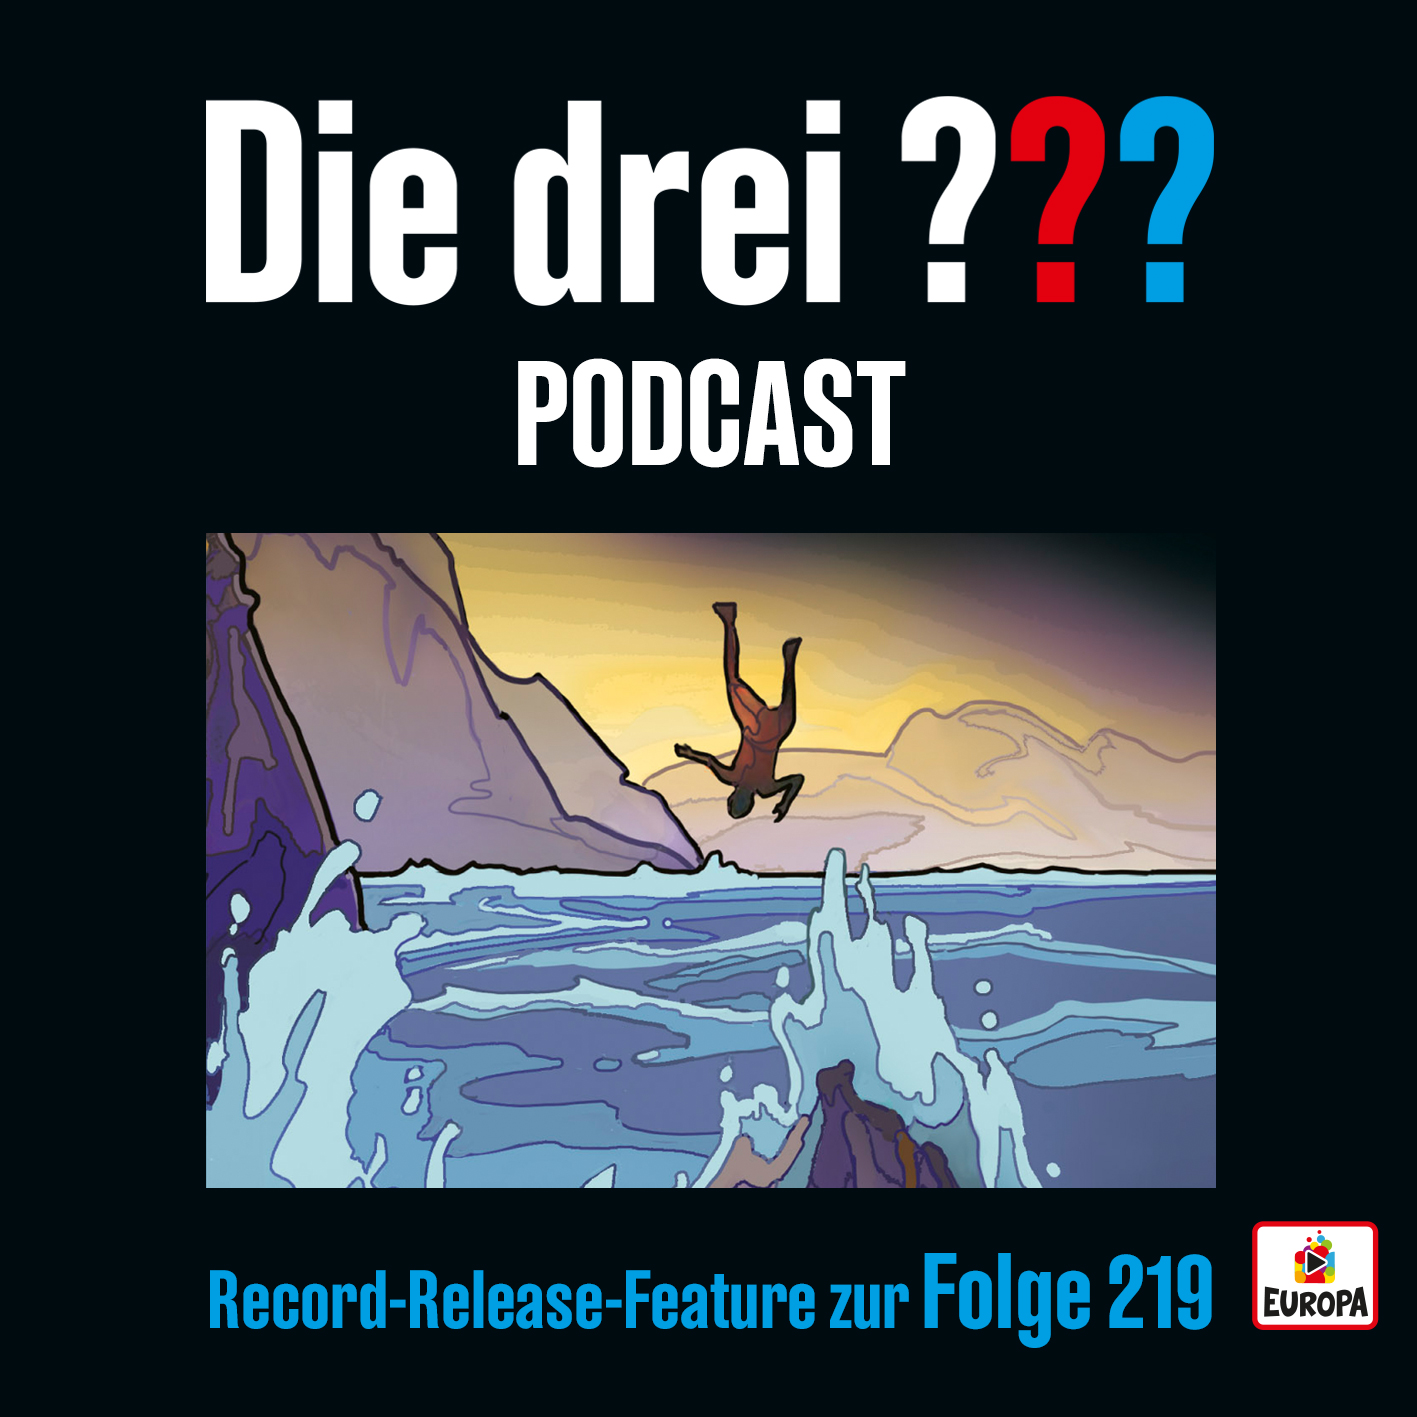 Die drei ??? Record Release Feature zur Folge 219 - Der neue Podcast zur Hörspielfolge 219 ist da! 